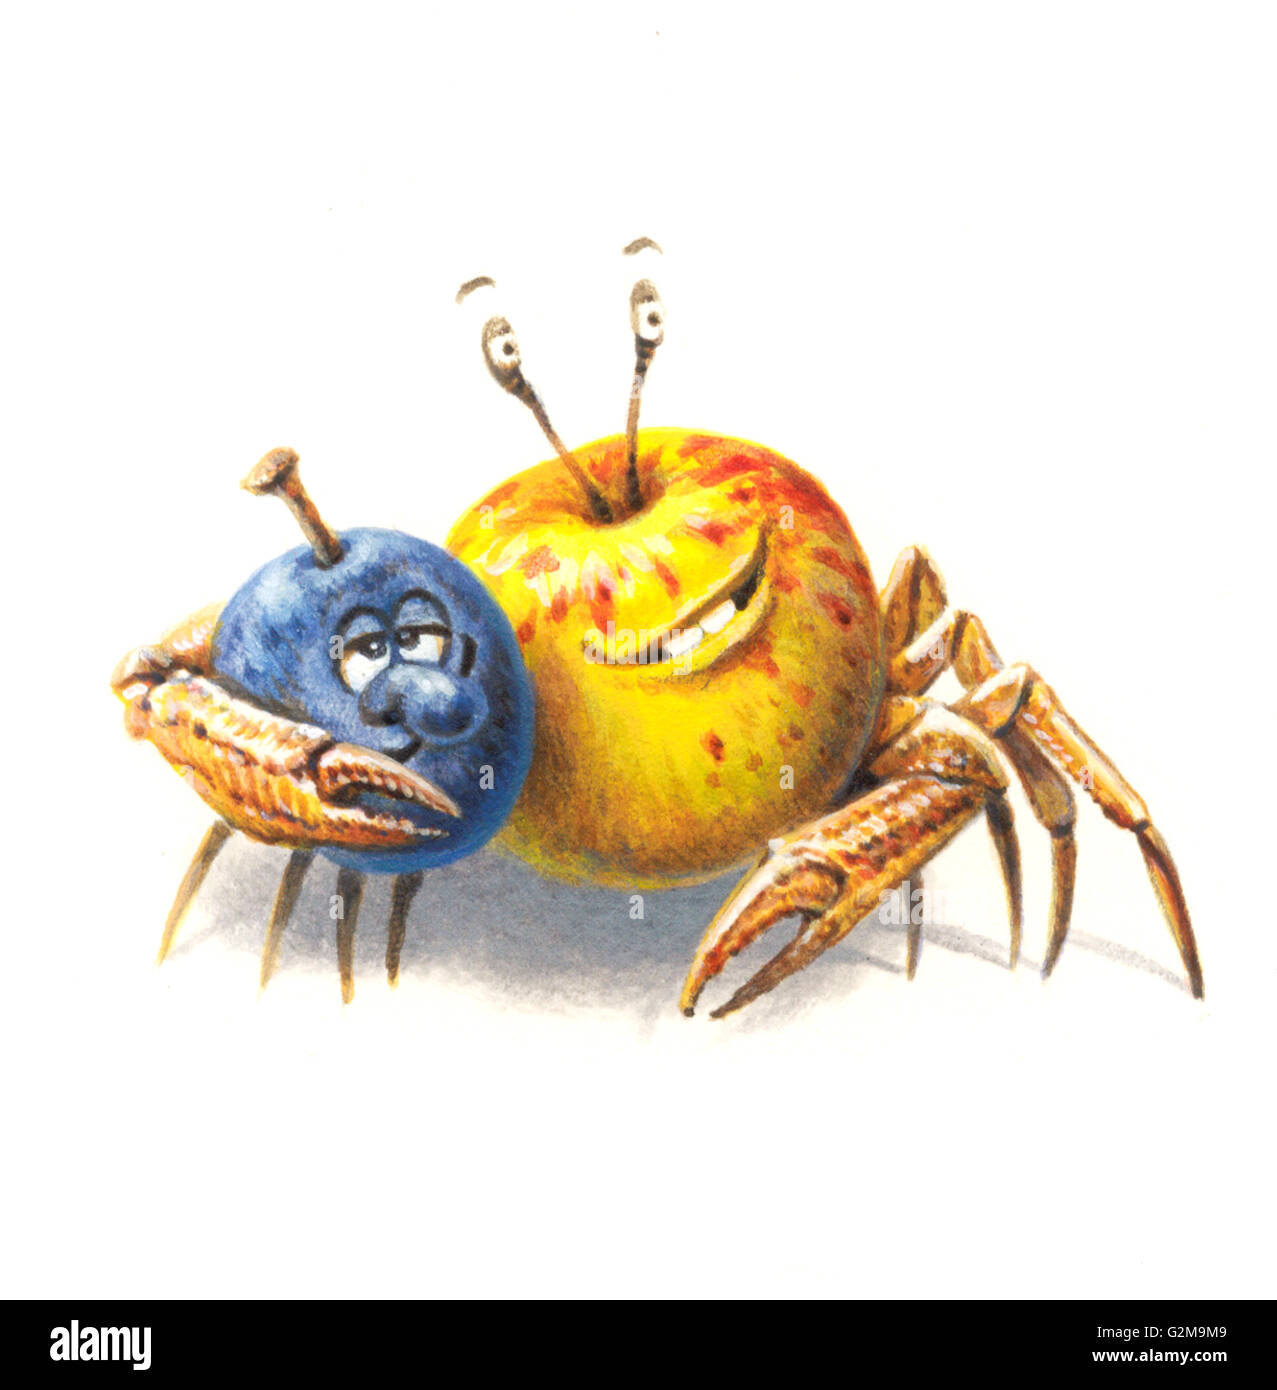 Image anthropomorphique de apple, de prune et de crabe sur fond blanc Banque D'Images